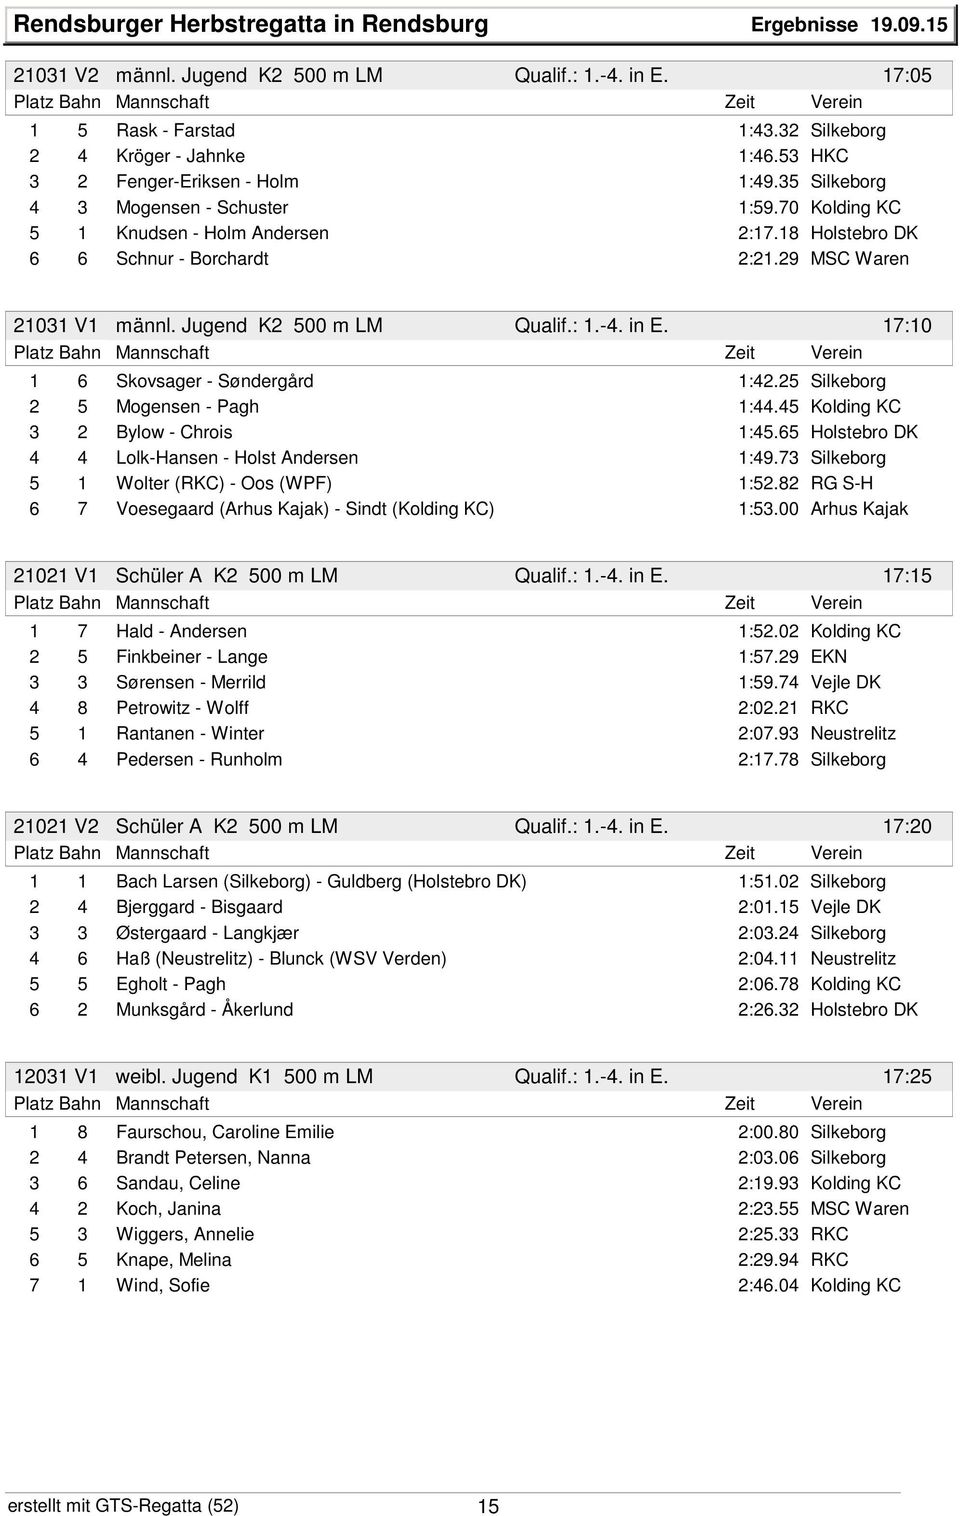 Jugend K2 500 m LM Qualif.: 1.-4. in E. 17:10 1 6 Skovsager - Søndergård 1:42.25 Silkeborg 2 5 Mogensen - Pagh 1:44.45 Kolding KC 3 2 Bylow - Chrois 1:45.